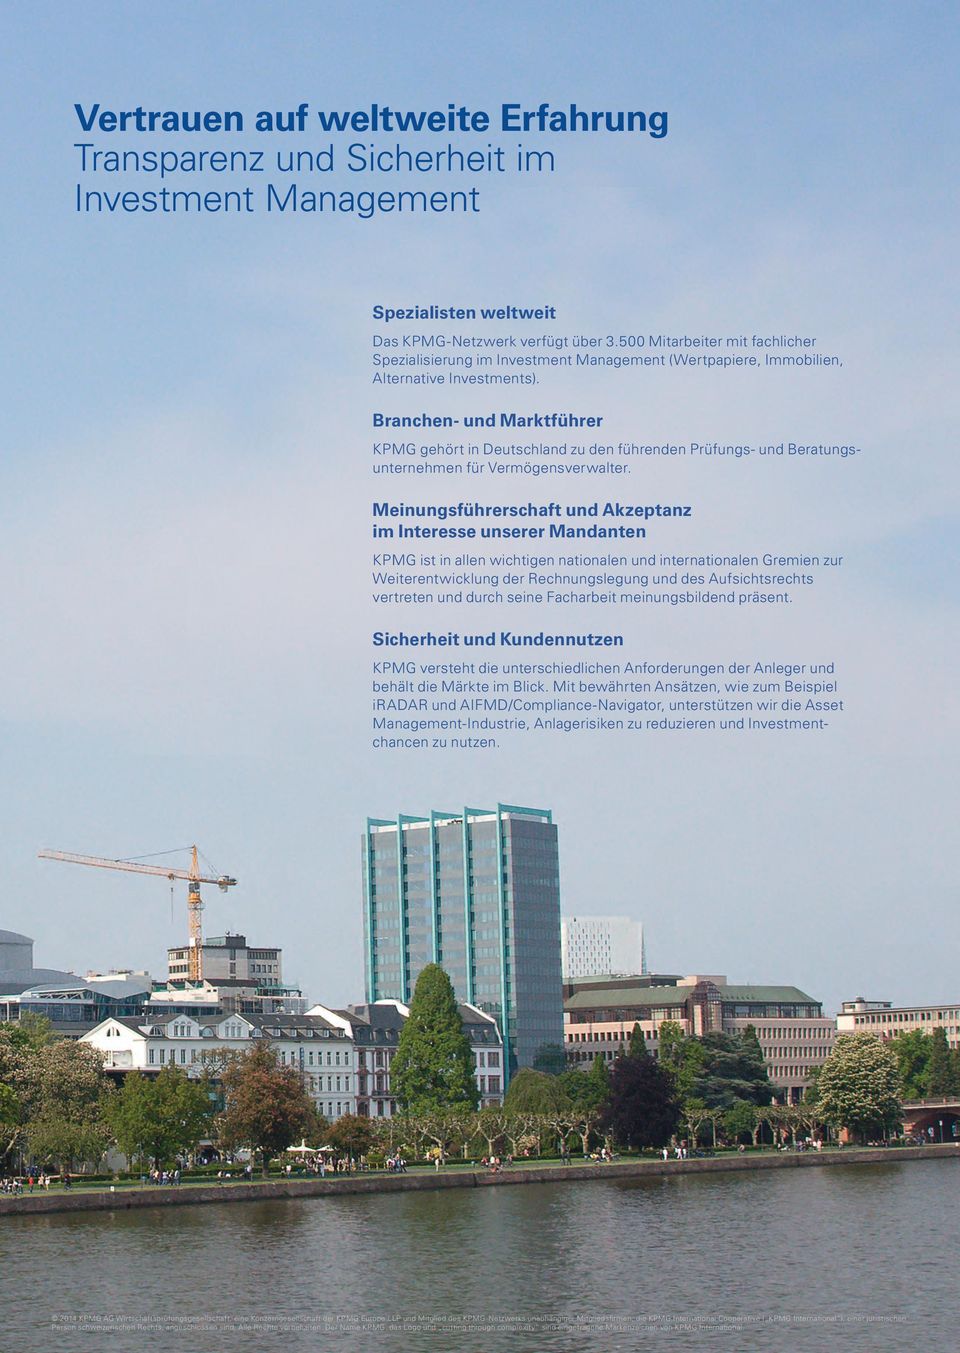 Branchen- und Marktführer KPMG gehört in Deutschland zu den führenden Prüfungs- und Beratungsunternehmen für Vermögensverwalter.